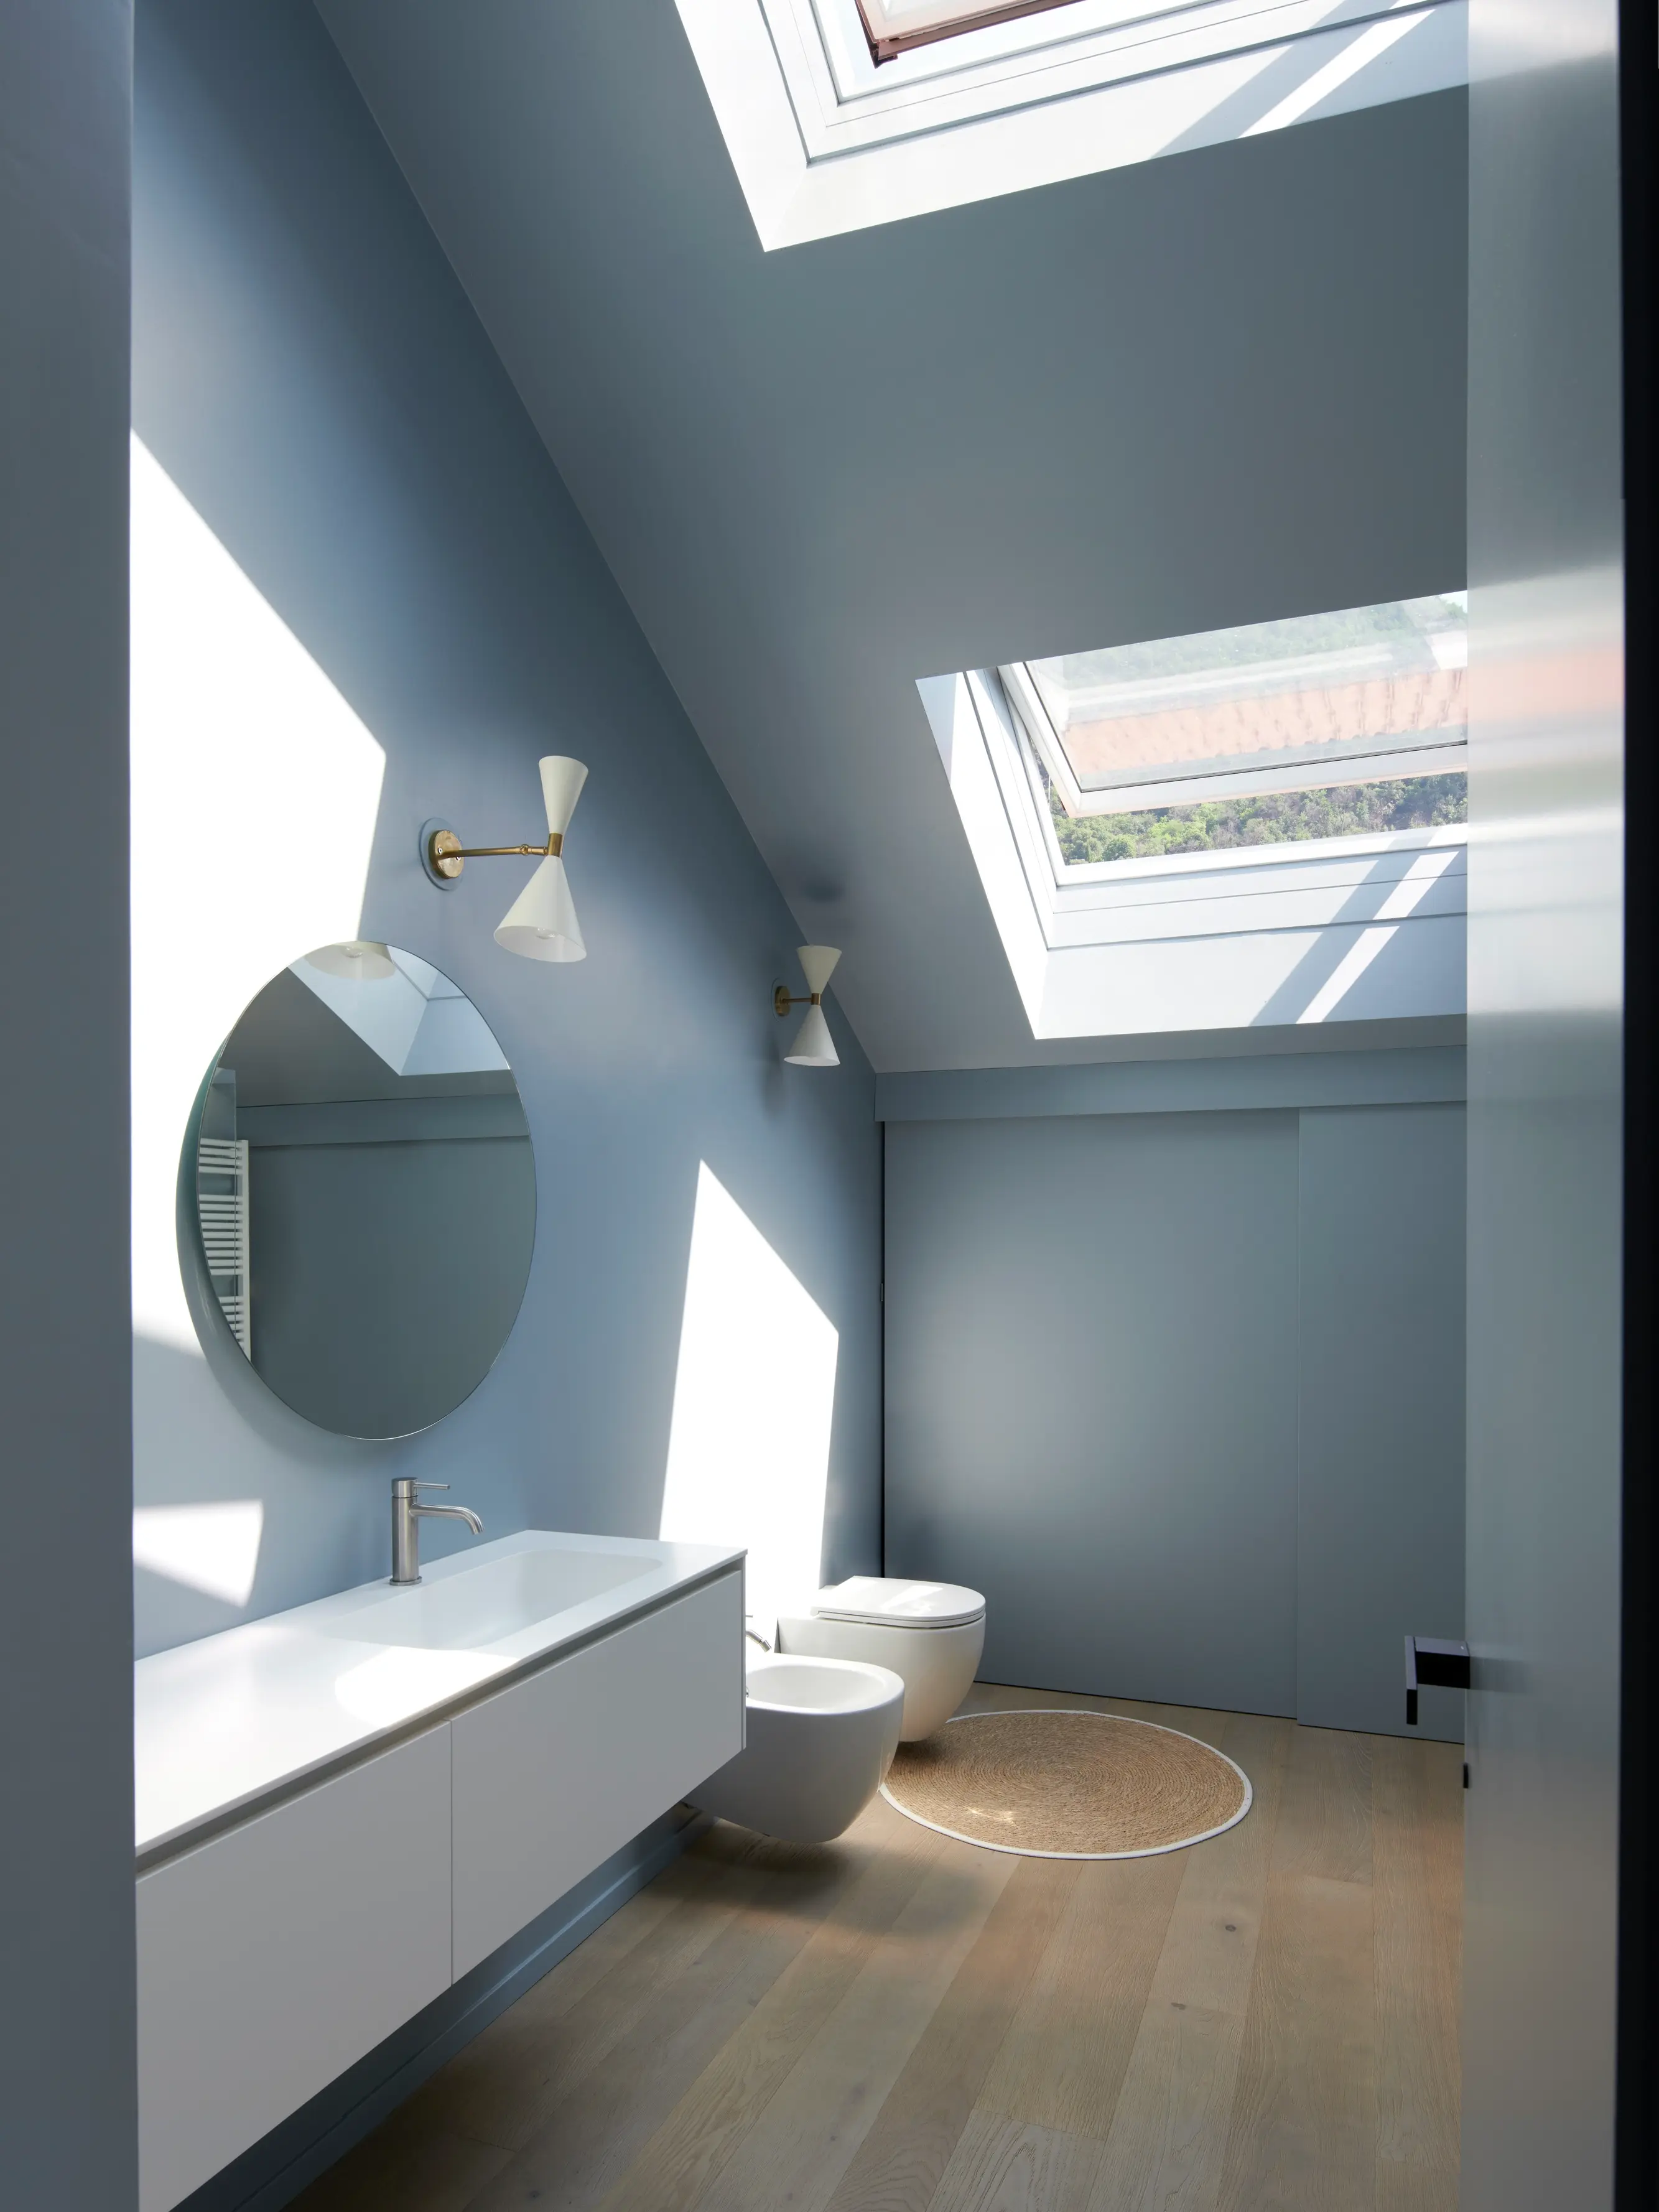 Bagno moderno con finestra per tetti VELUX, mobile bagno sospeso e pavimento in legno.